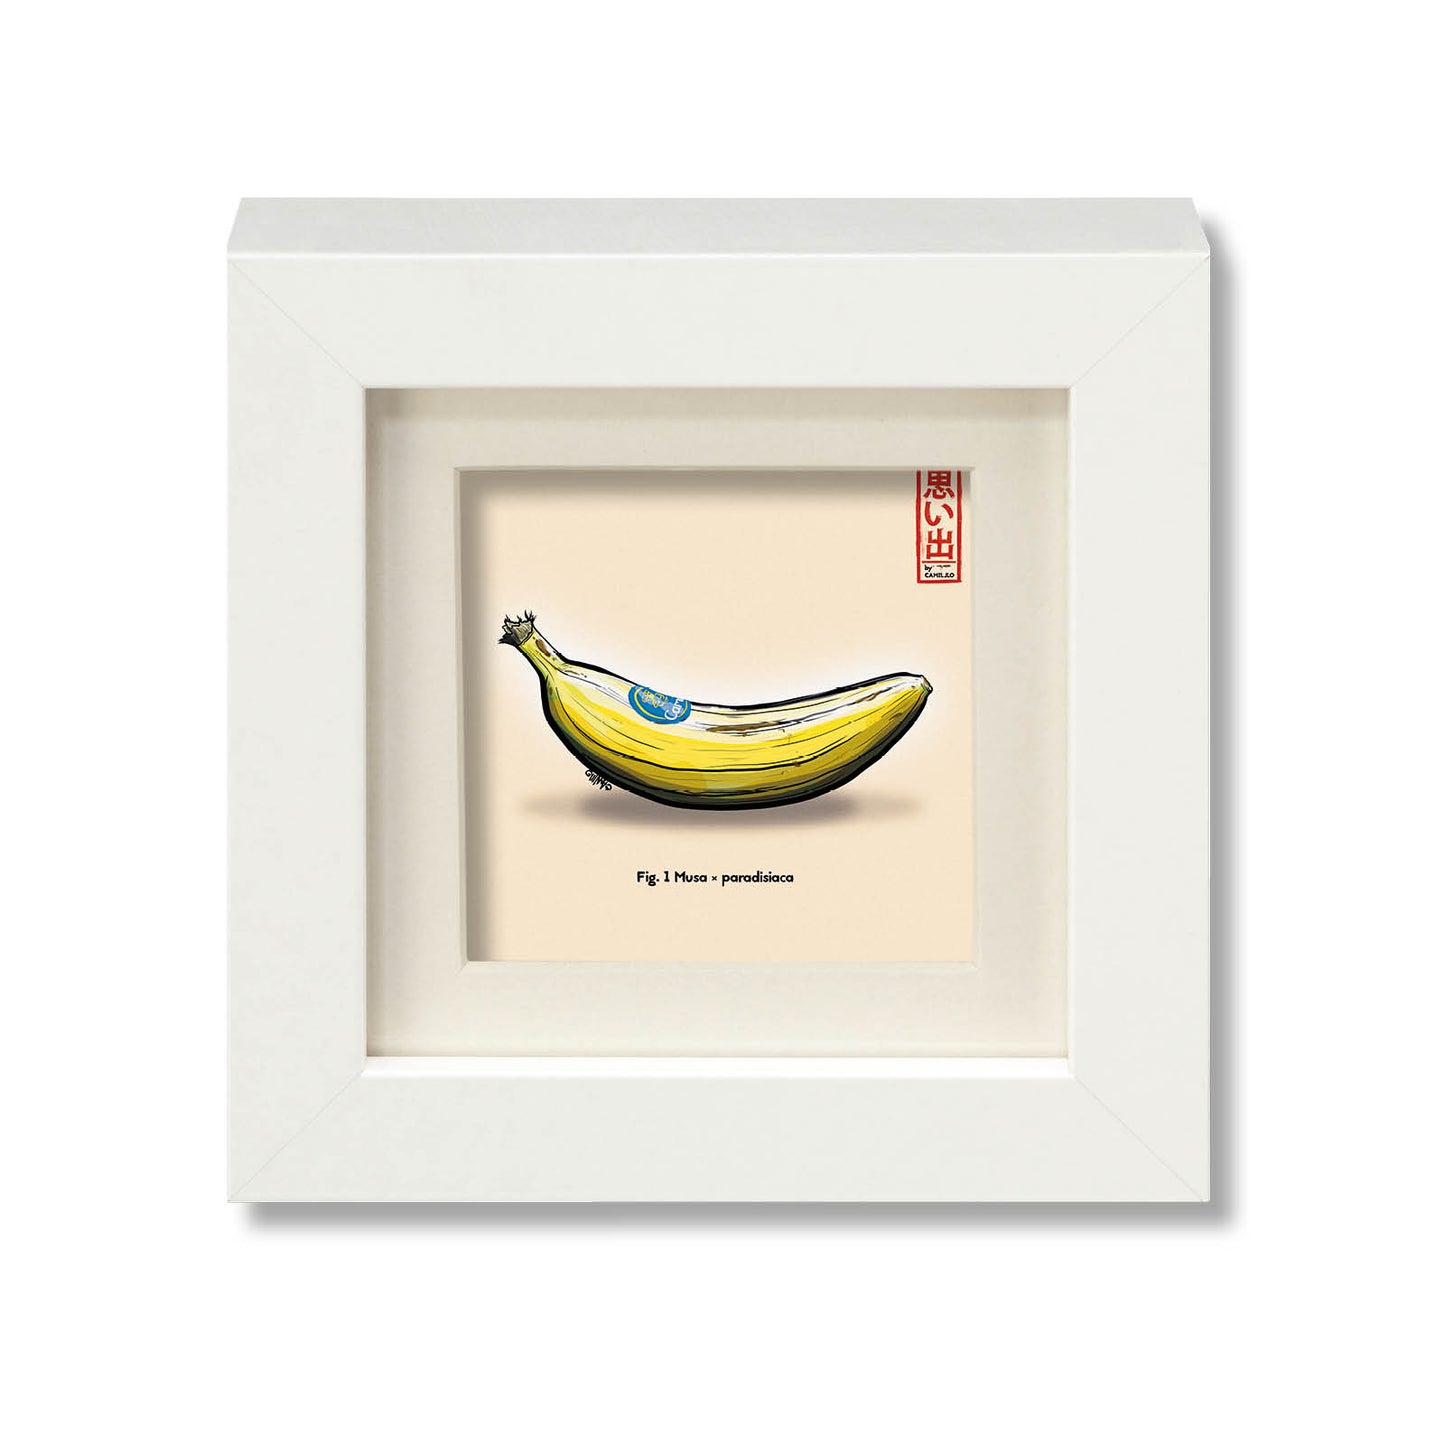 Giclée-Druck einer frischen Banane - natürlicher Snack - weißer Rahmen - kleine Größe